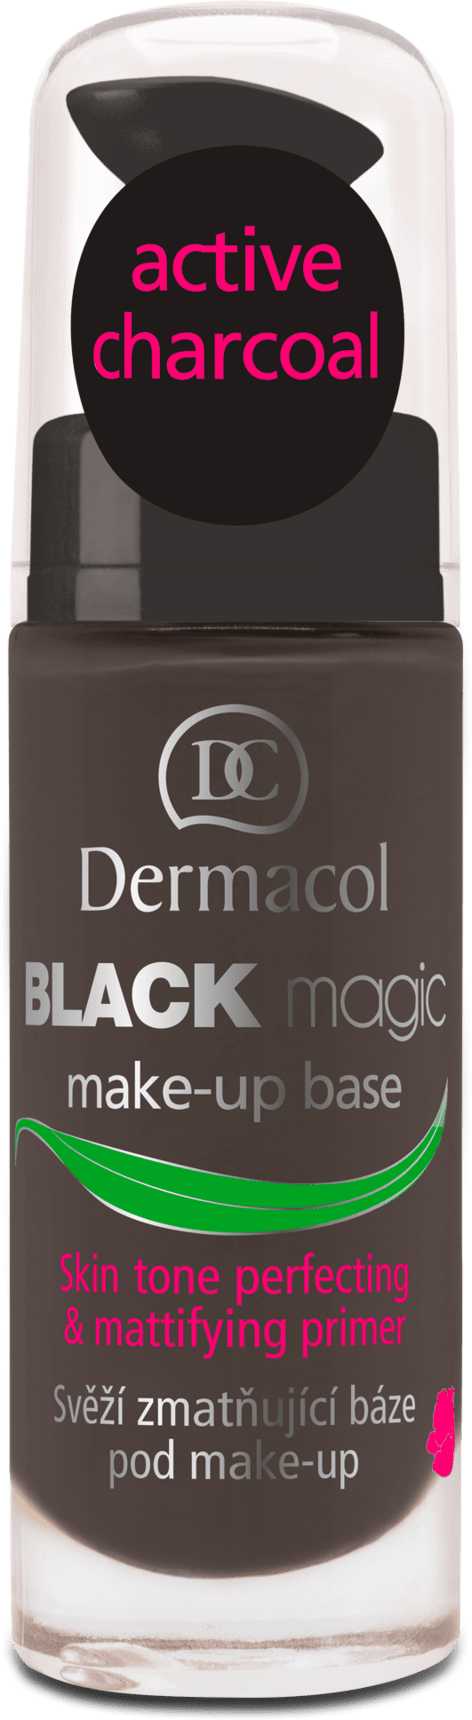 Dermacol Black Magic 20ml primeris